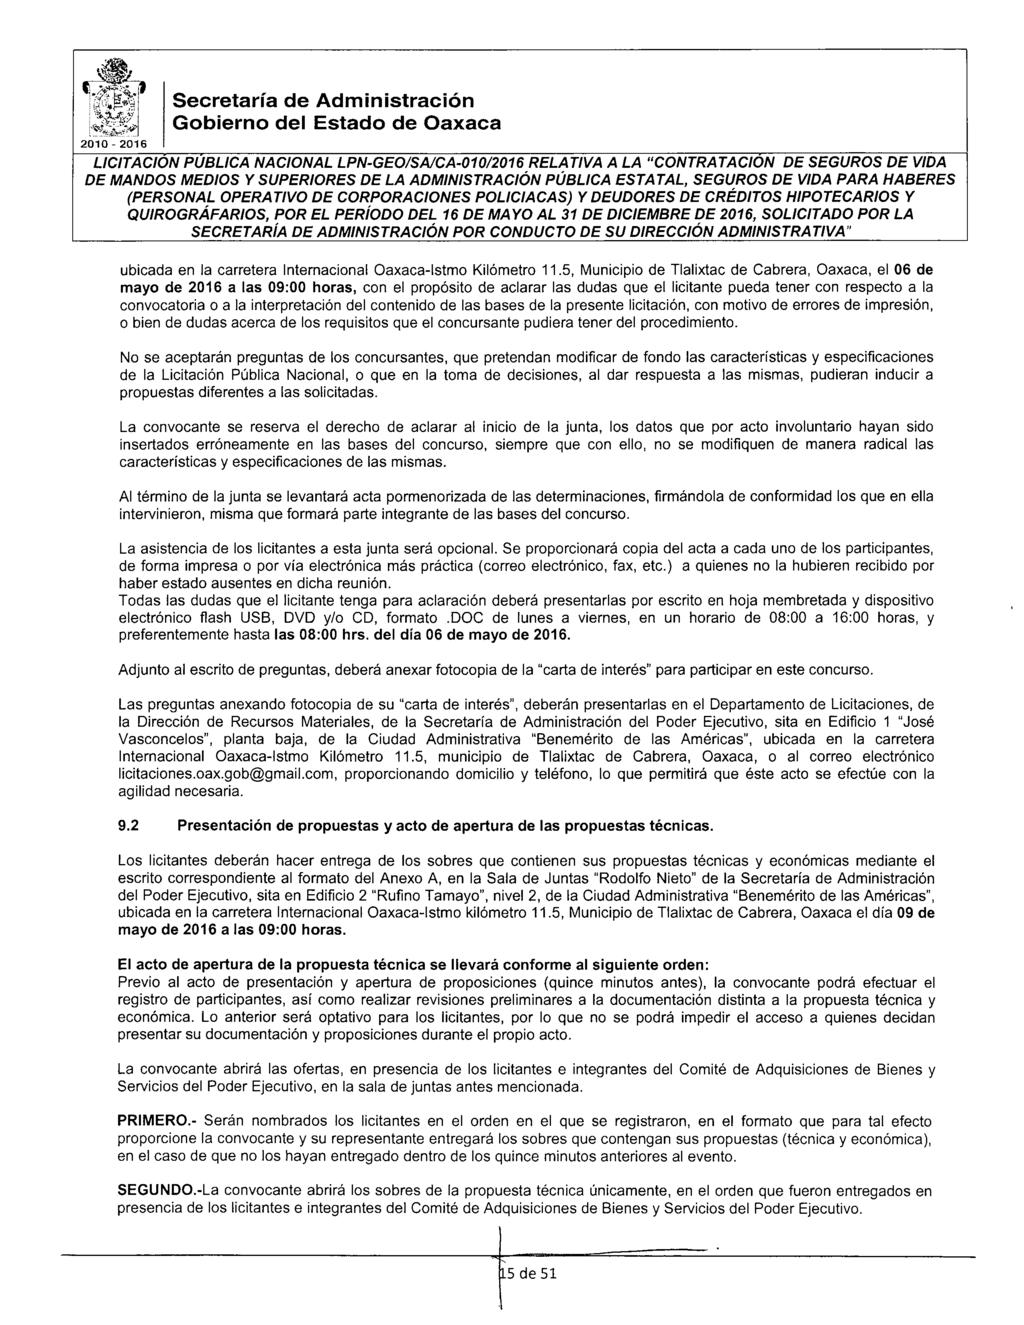 2010-2016 Secretaría de Administración Gbiern del Estad de Oaxaca L/CITACION PUBLICA NACIONAL LPN-GEO/SA/CA-01012016 RELATIVA A LA "CONTRATACION DE SEGUROS DE VIDA (PERSONAL OPERA T/VO DE